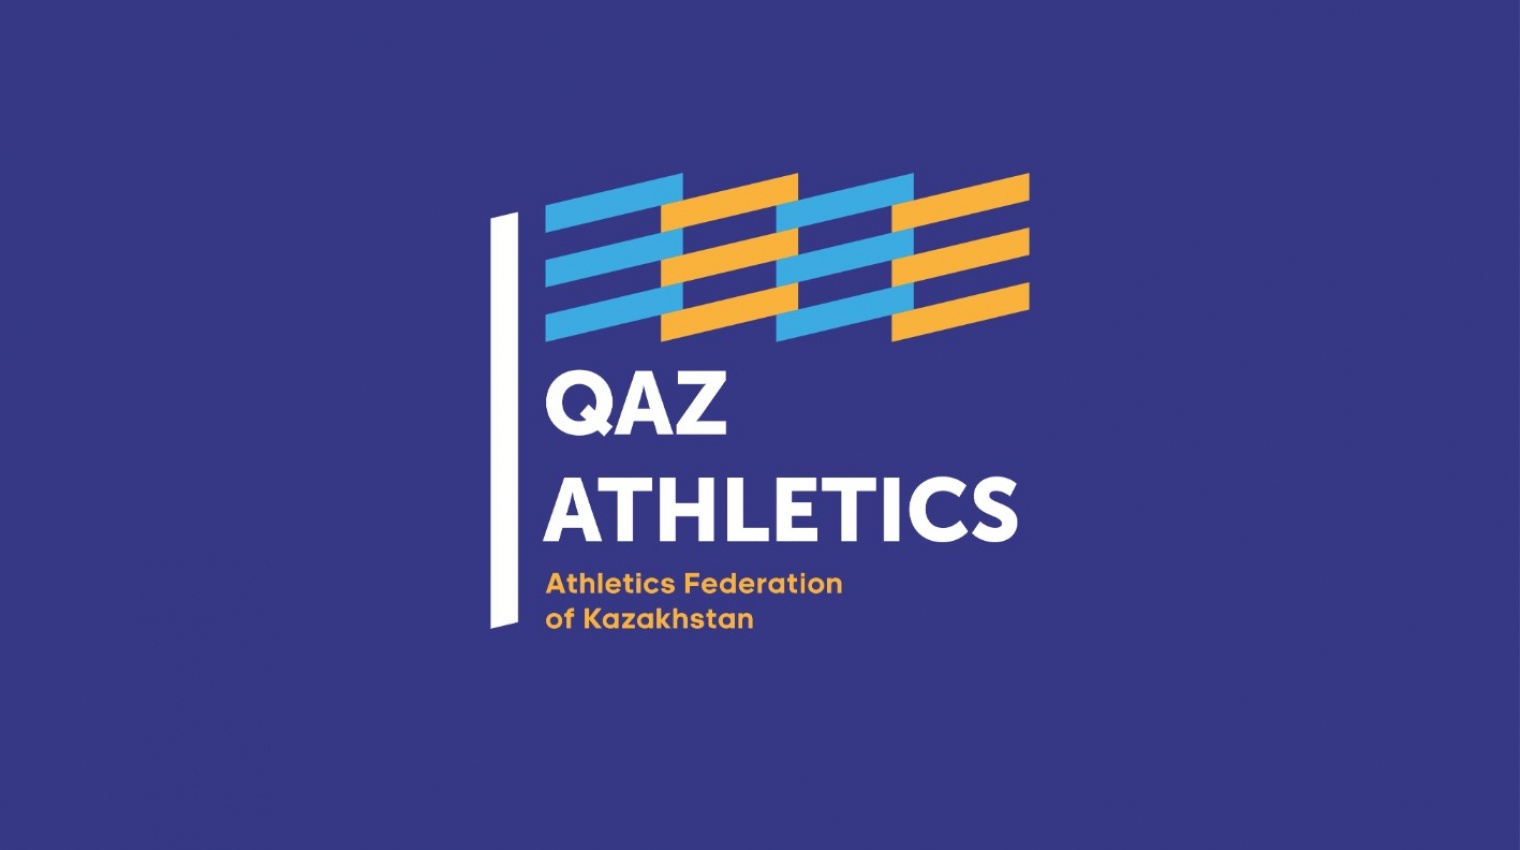 Касым-Жомарт Токаев подписал закон об отмене премий спортсменам, попавшимся на допинге